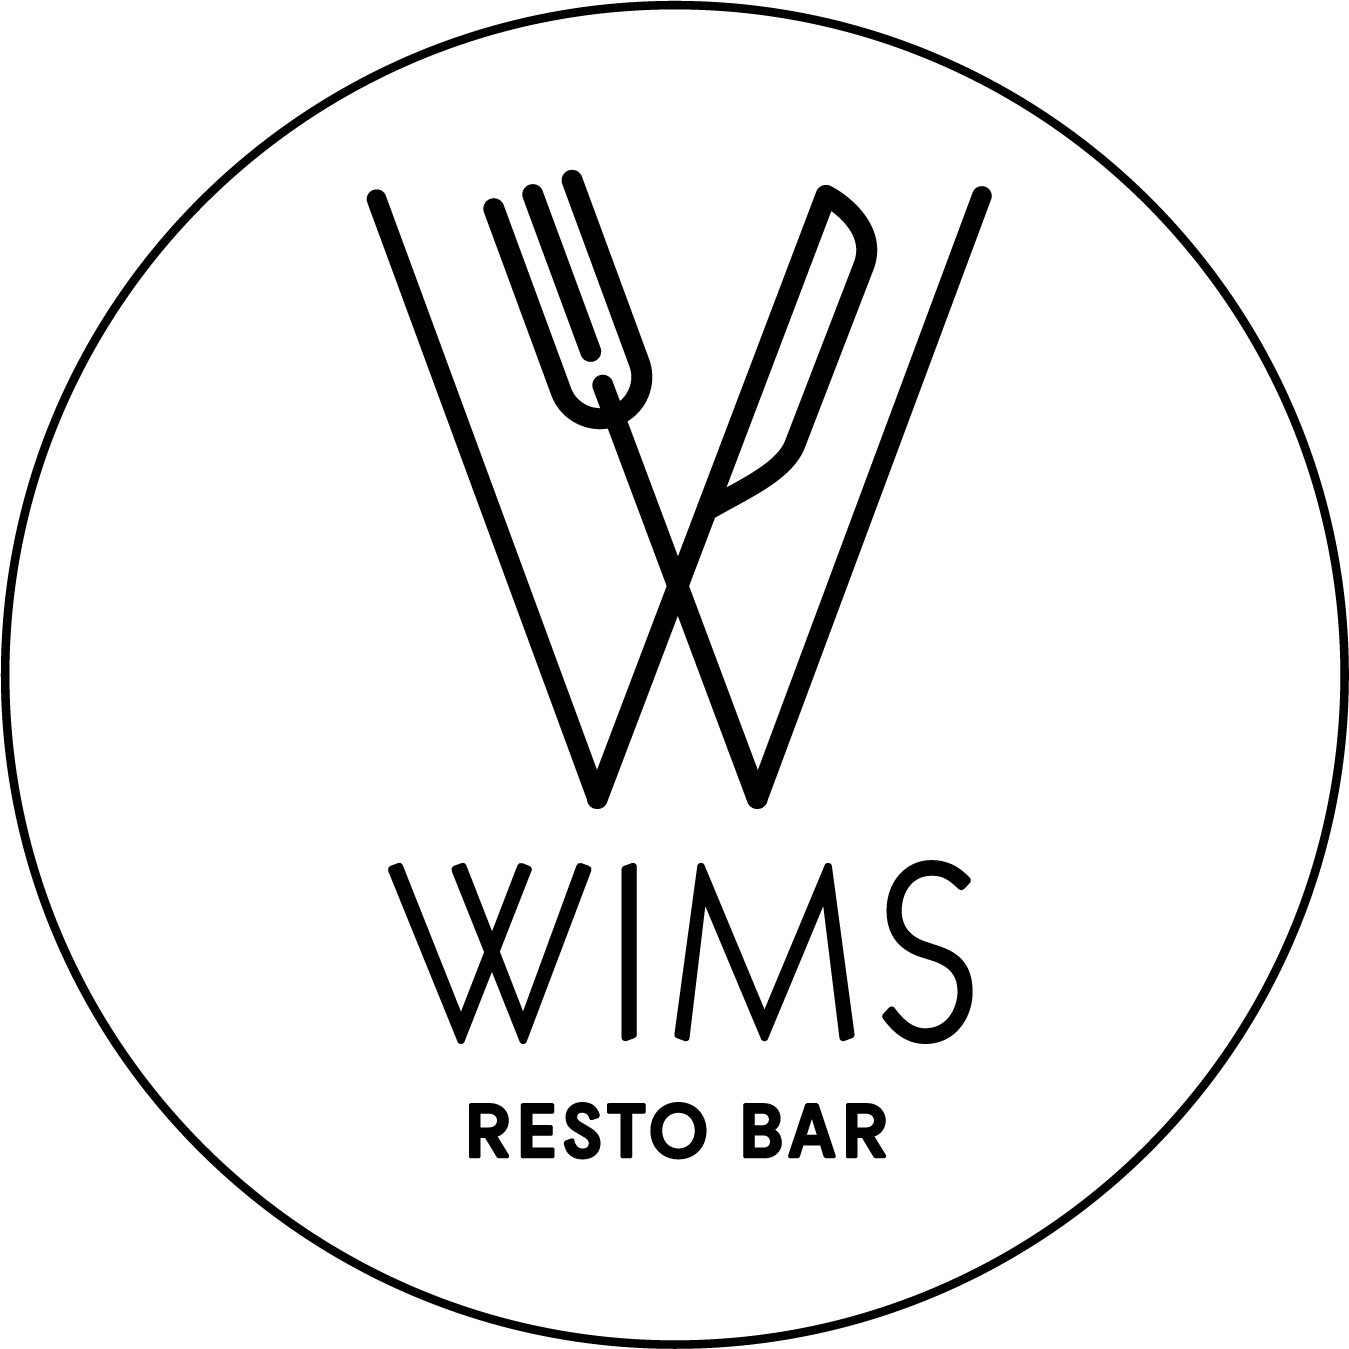 WIMS rest bar